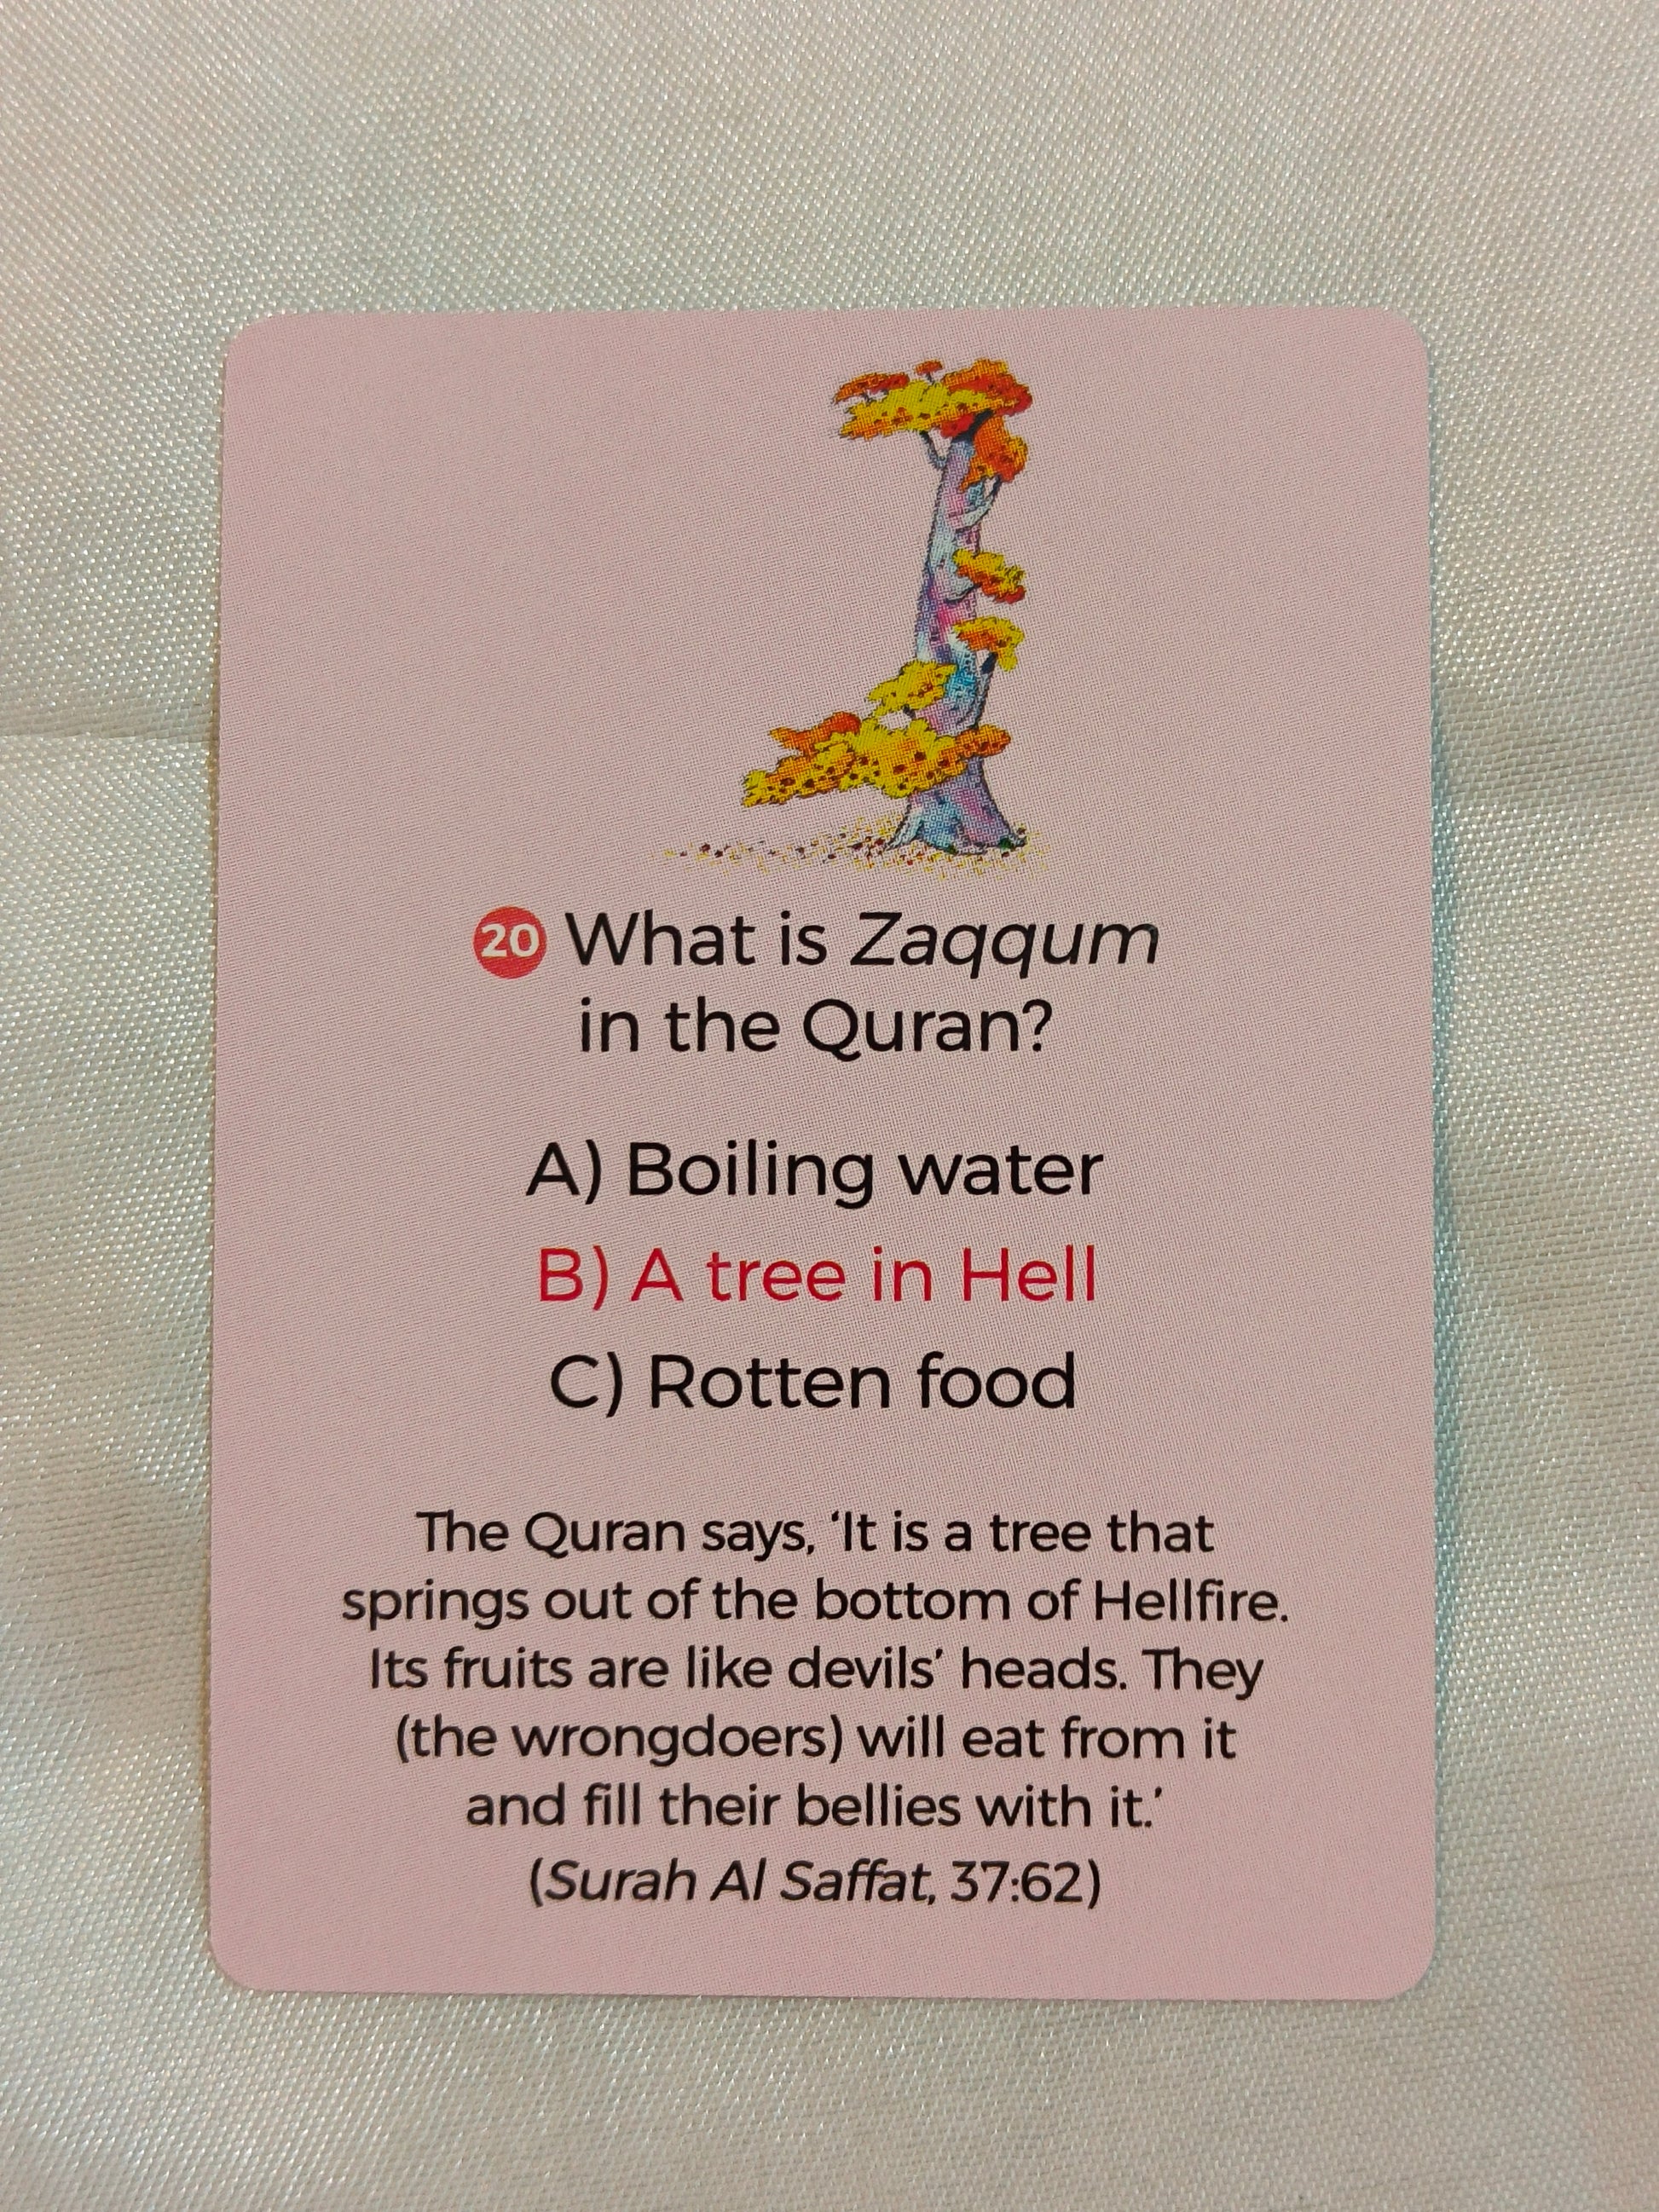 Quran Quiz Cards - alifthebookstore